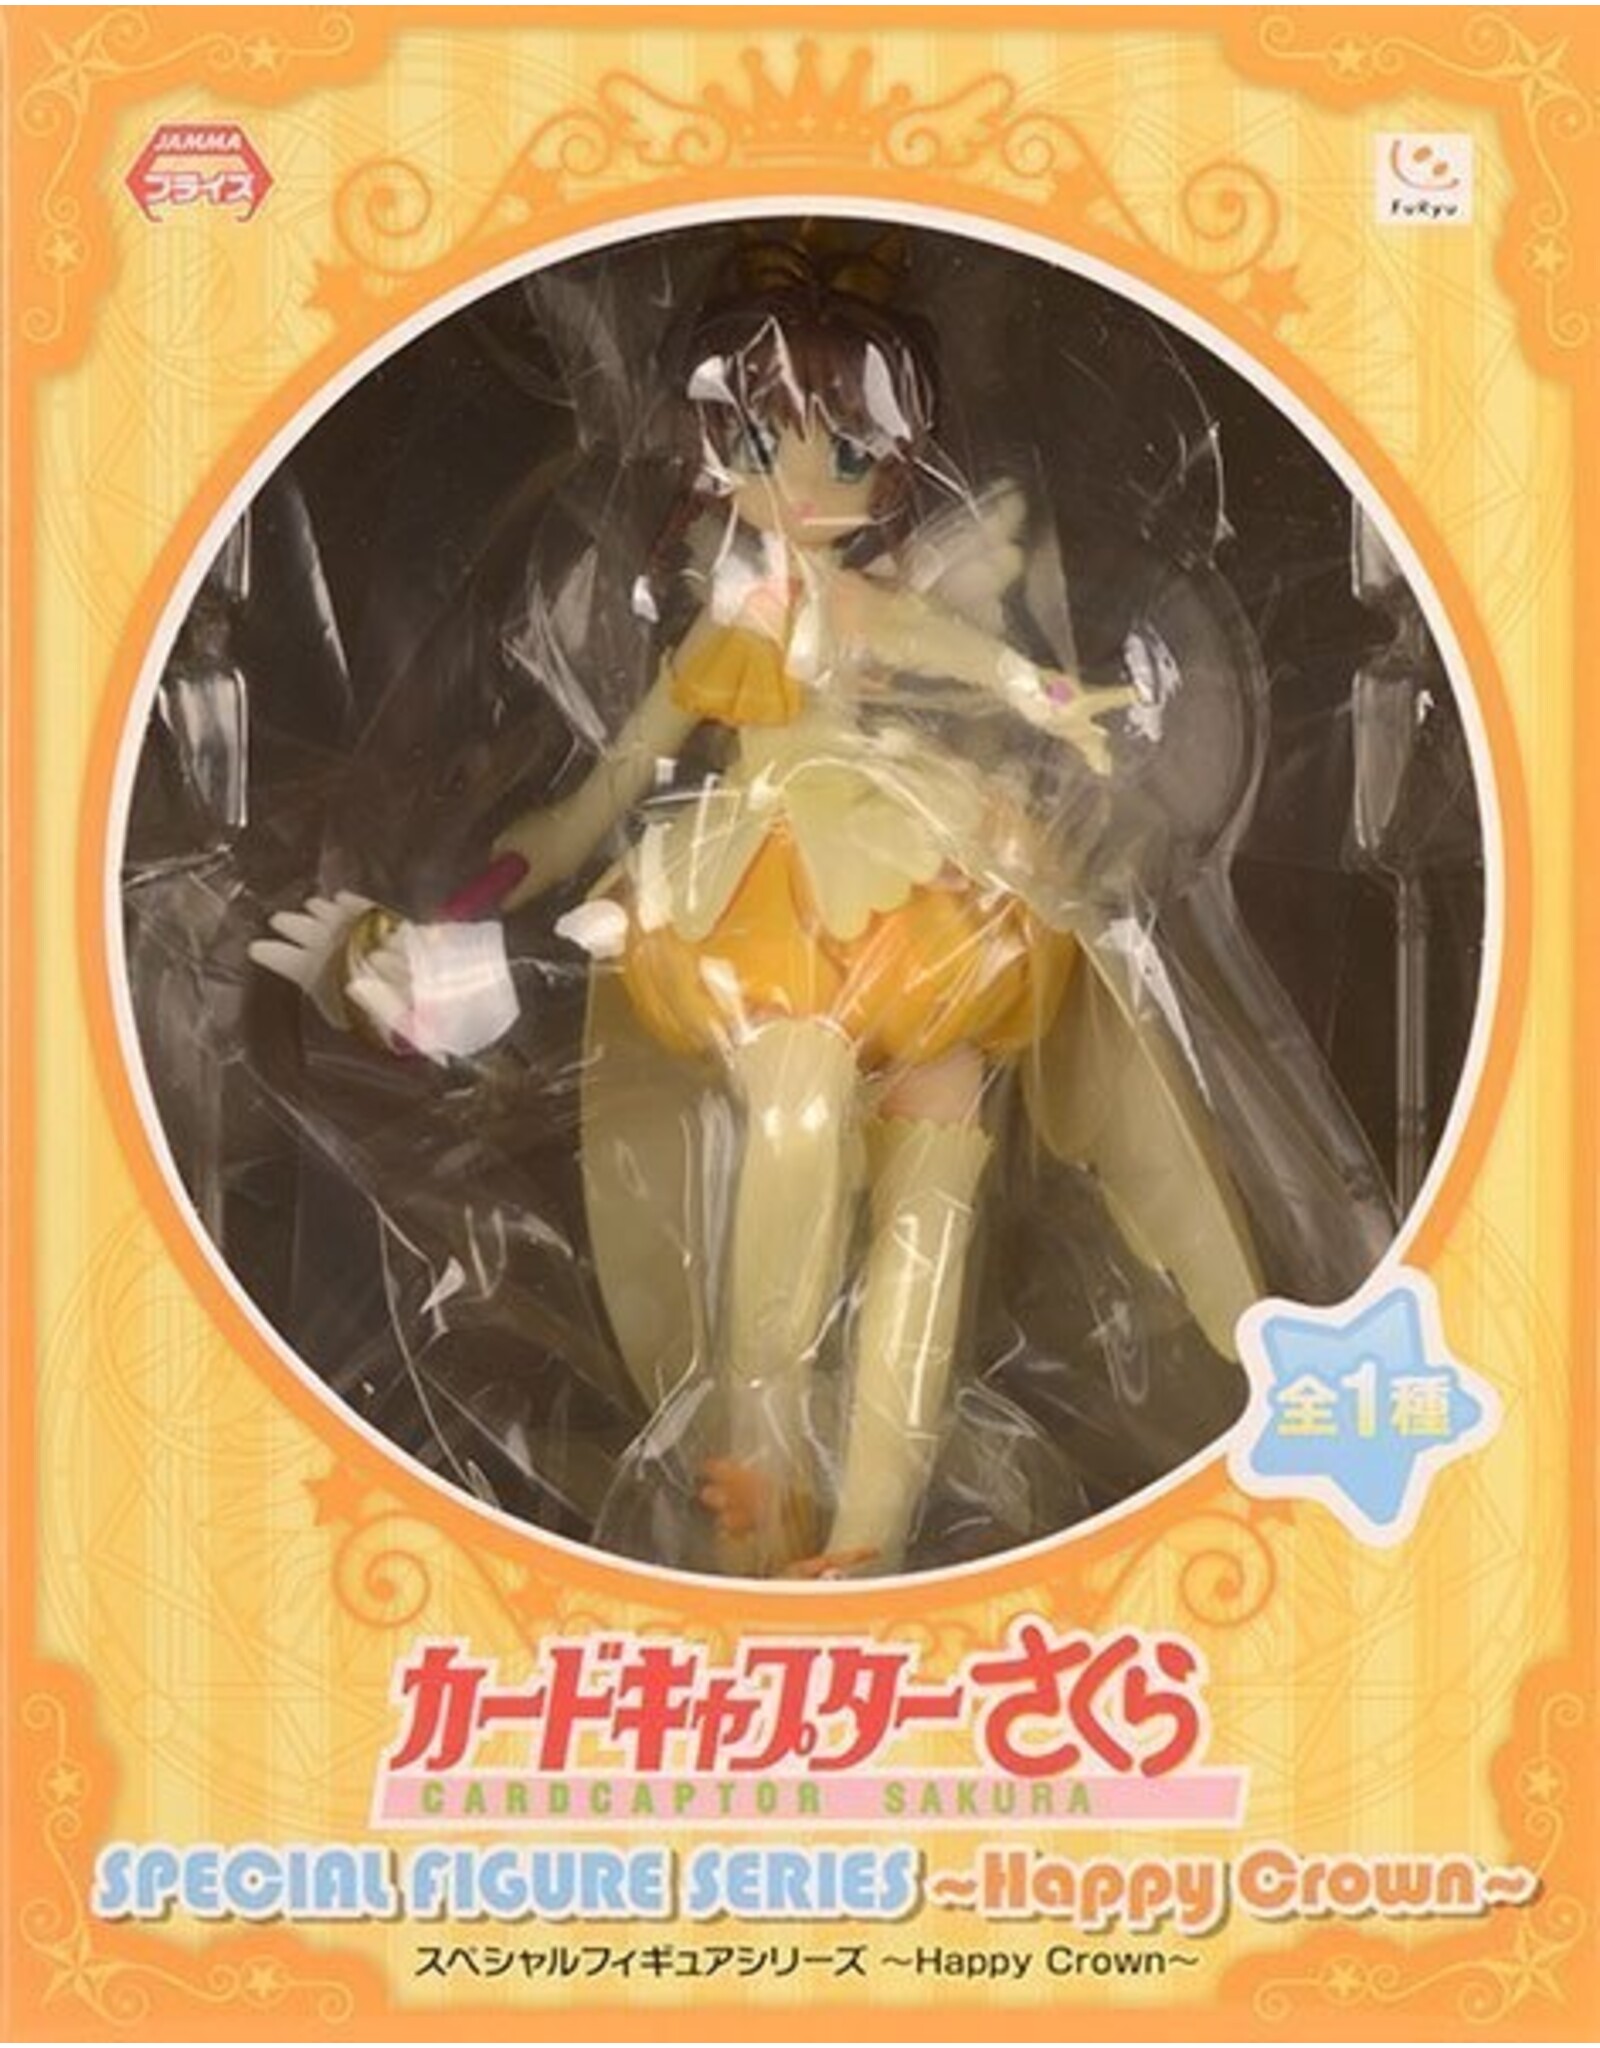 Cardcaptor Sakura: Special Figure Series - Happy Crown  FuRyu